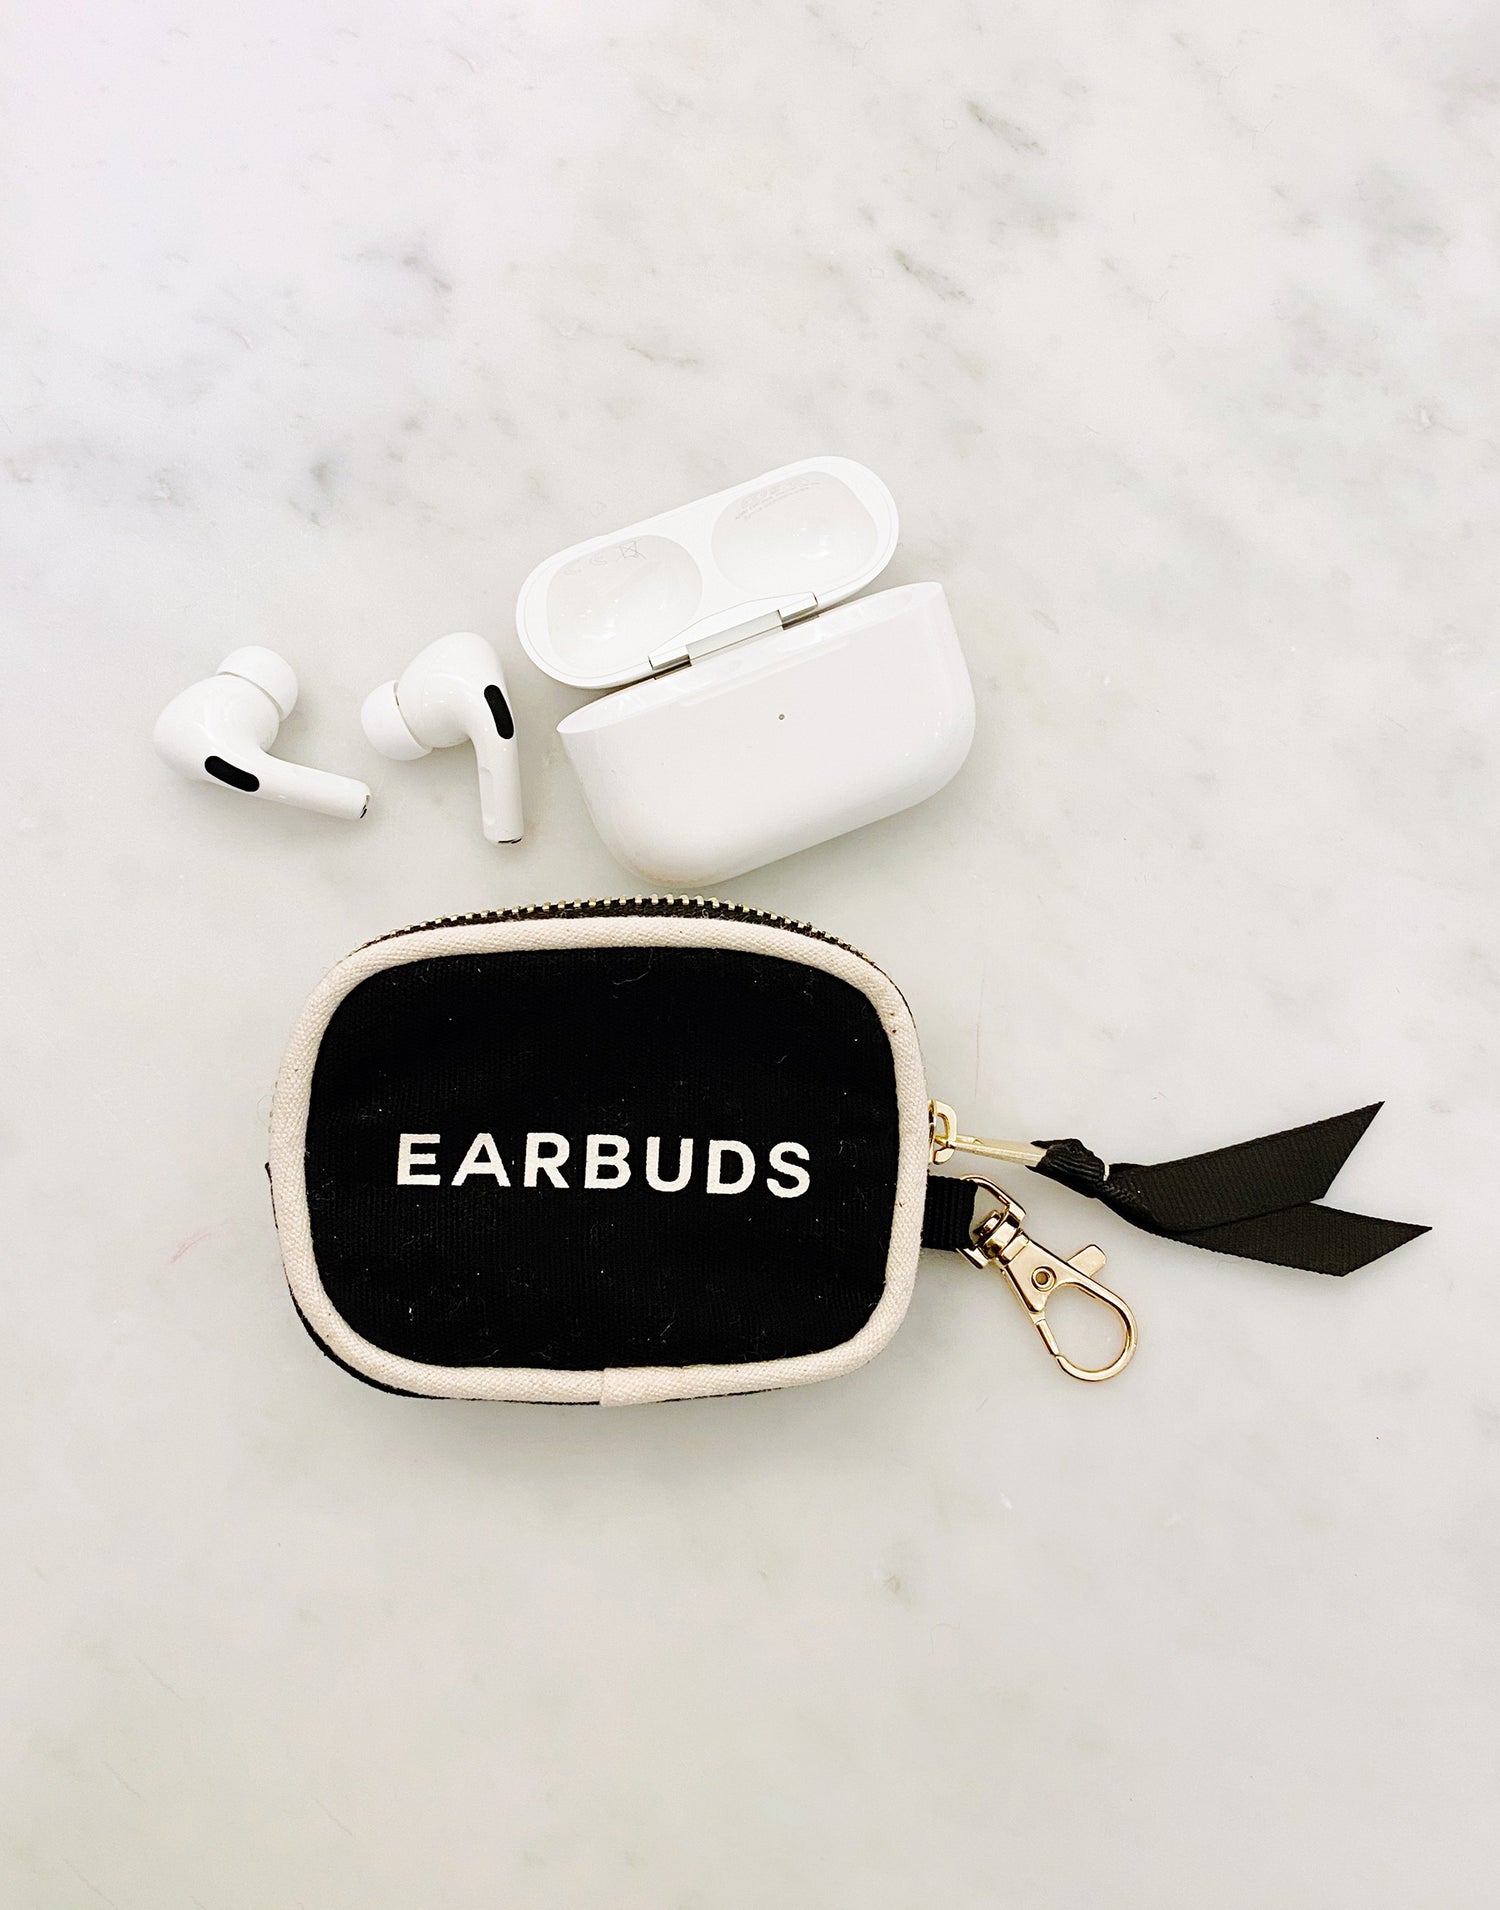 Mini Earpod Zipper Case in Black by Bag-all - Product View